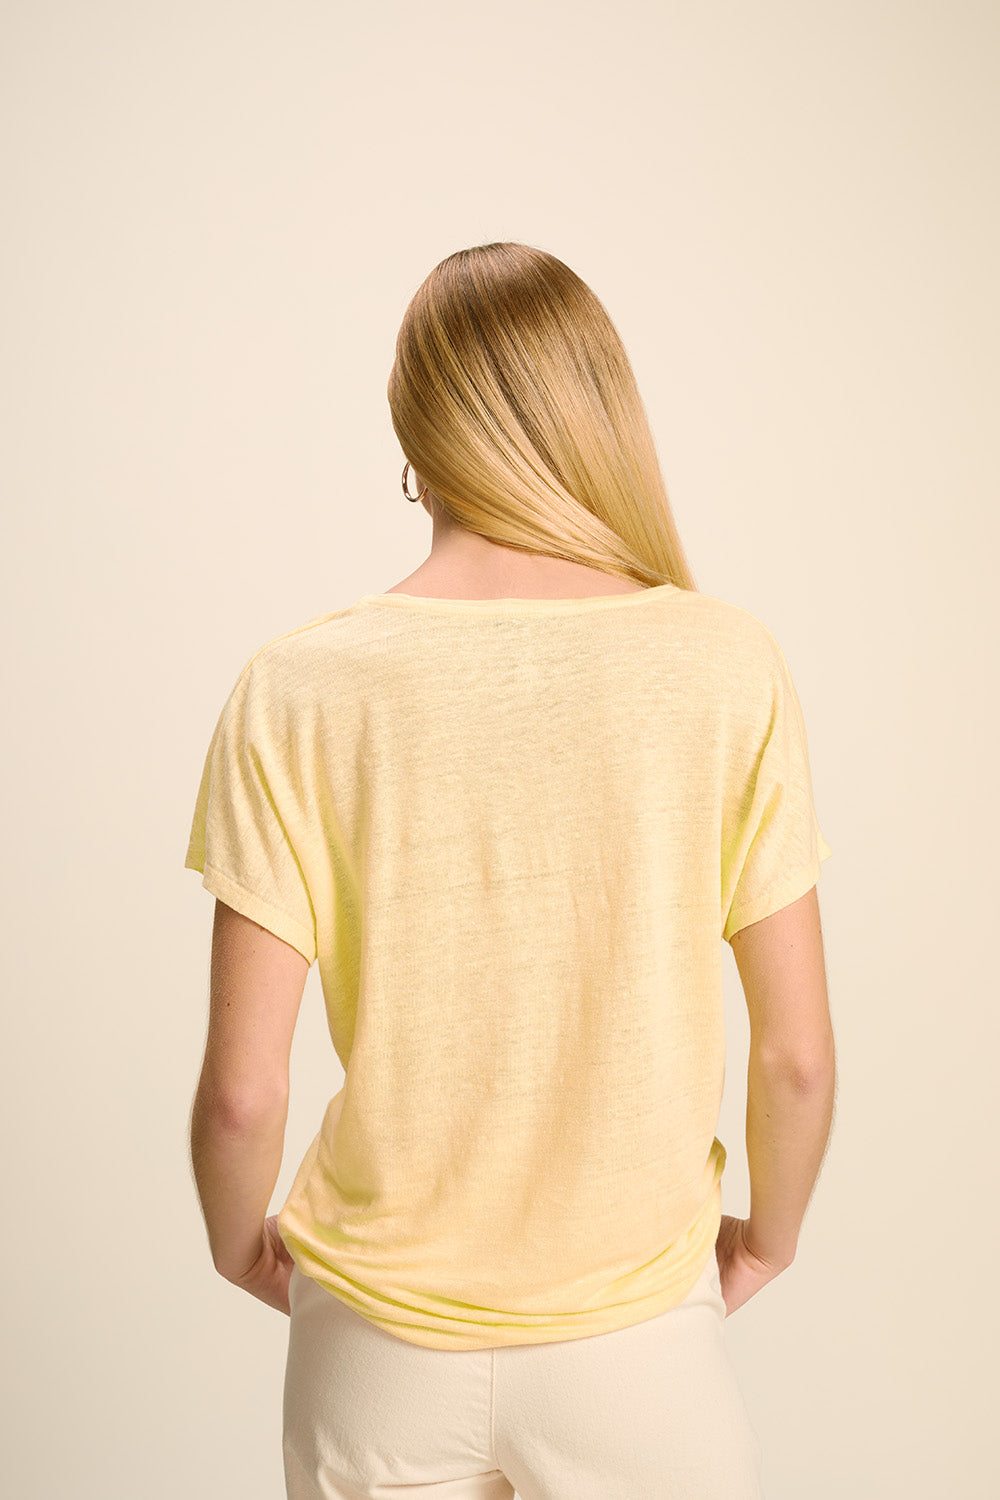 MINCO - T-shirt mimosa uni en maille de lin